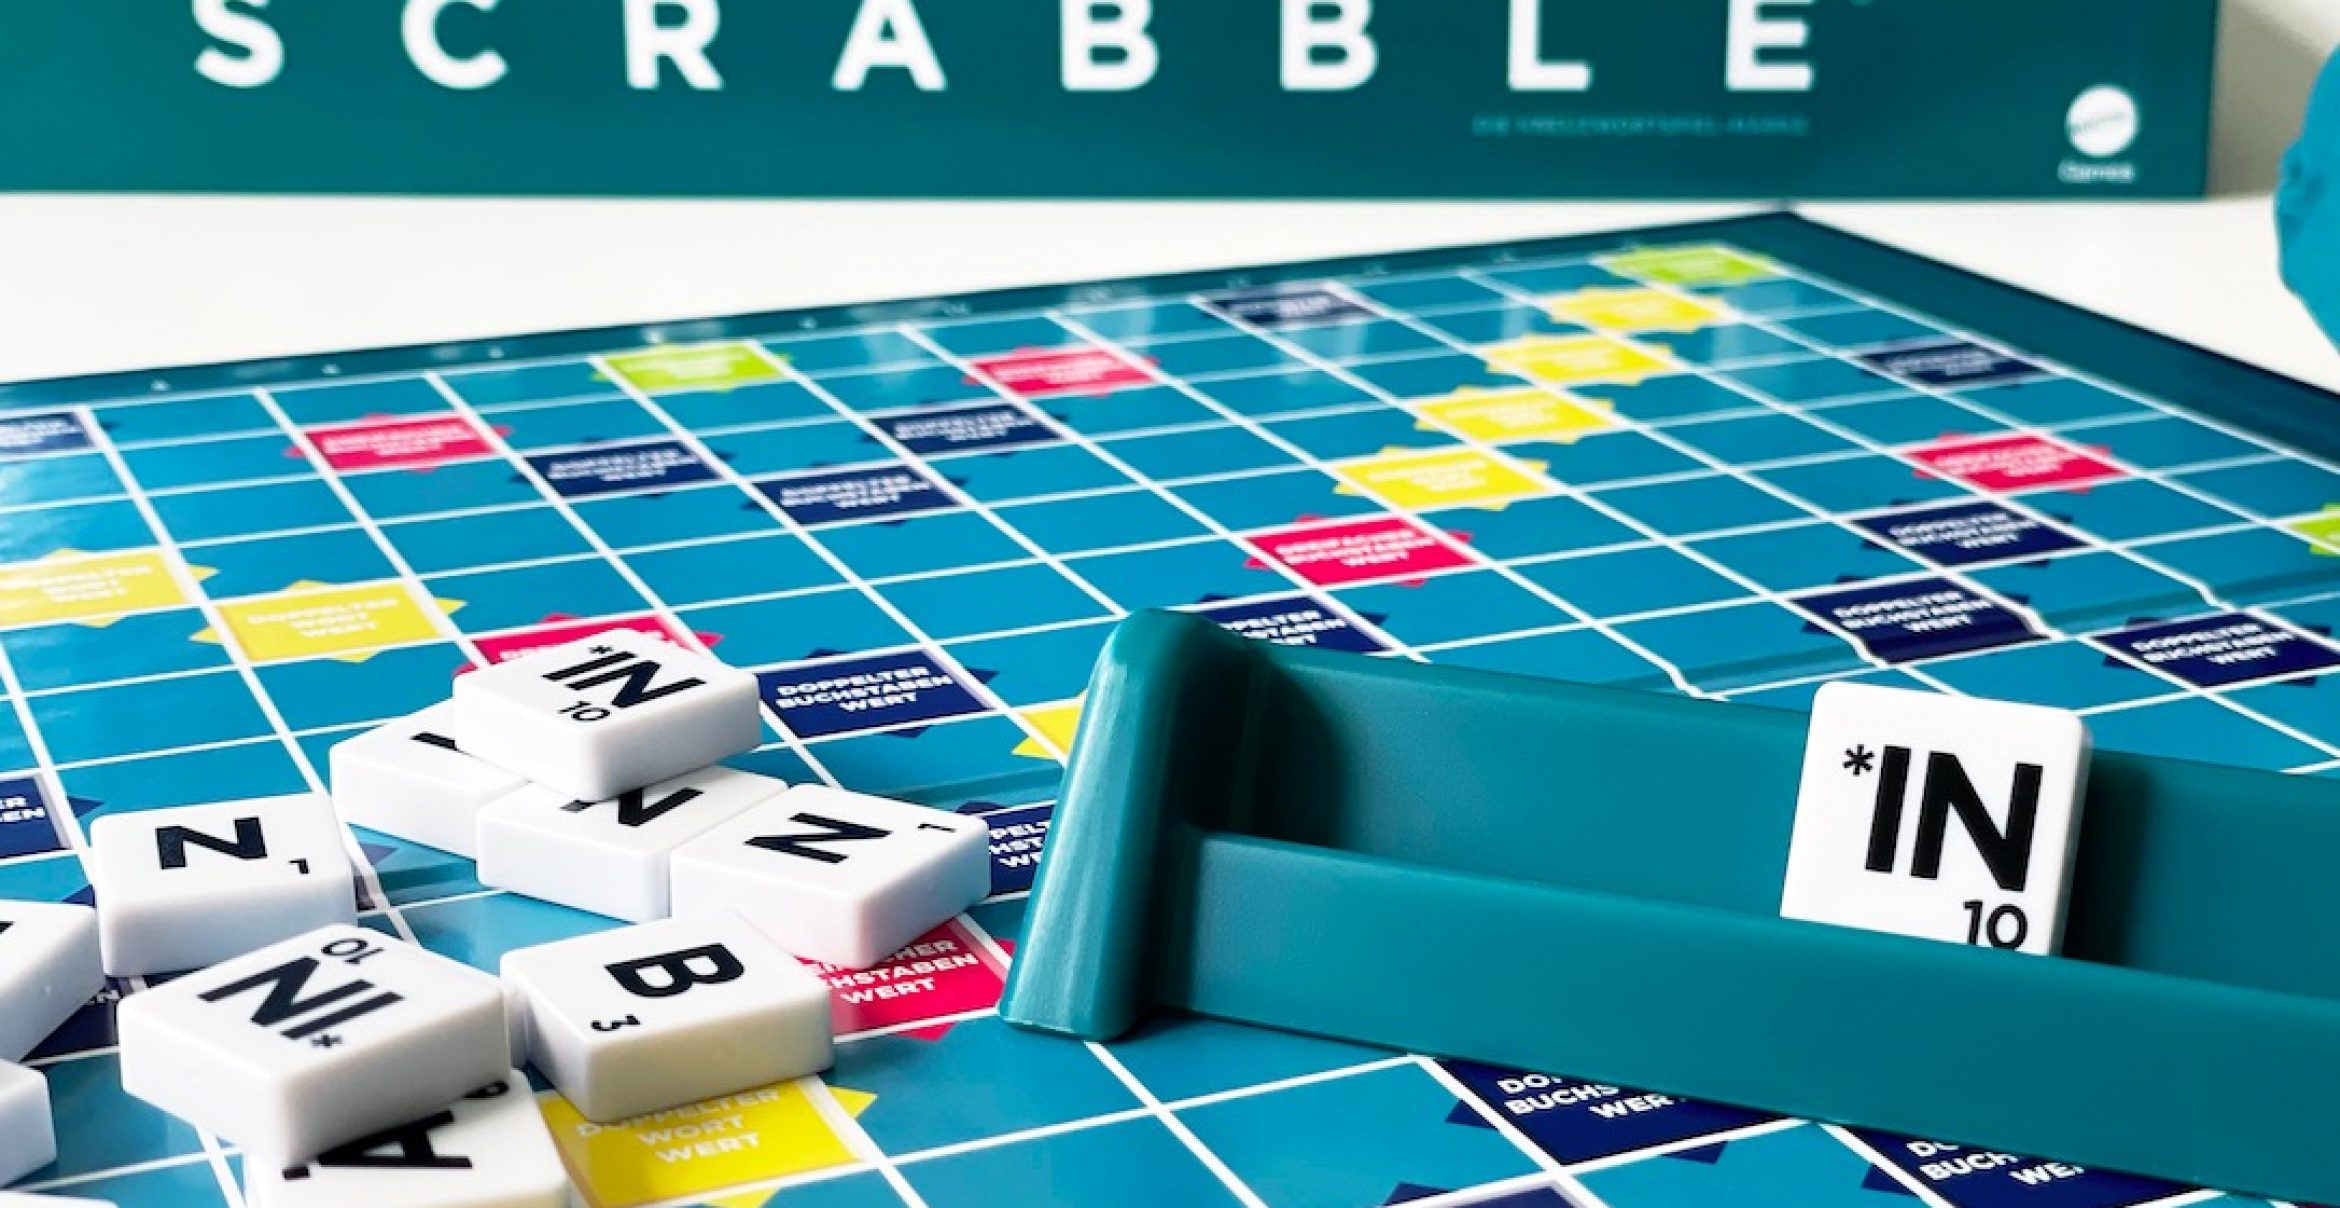 Wusstet ihr, dass man beim Brettspiel „Scrabble“ gendern kann?